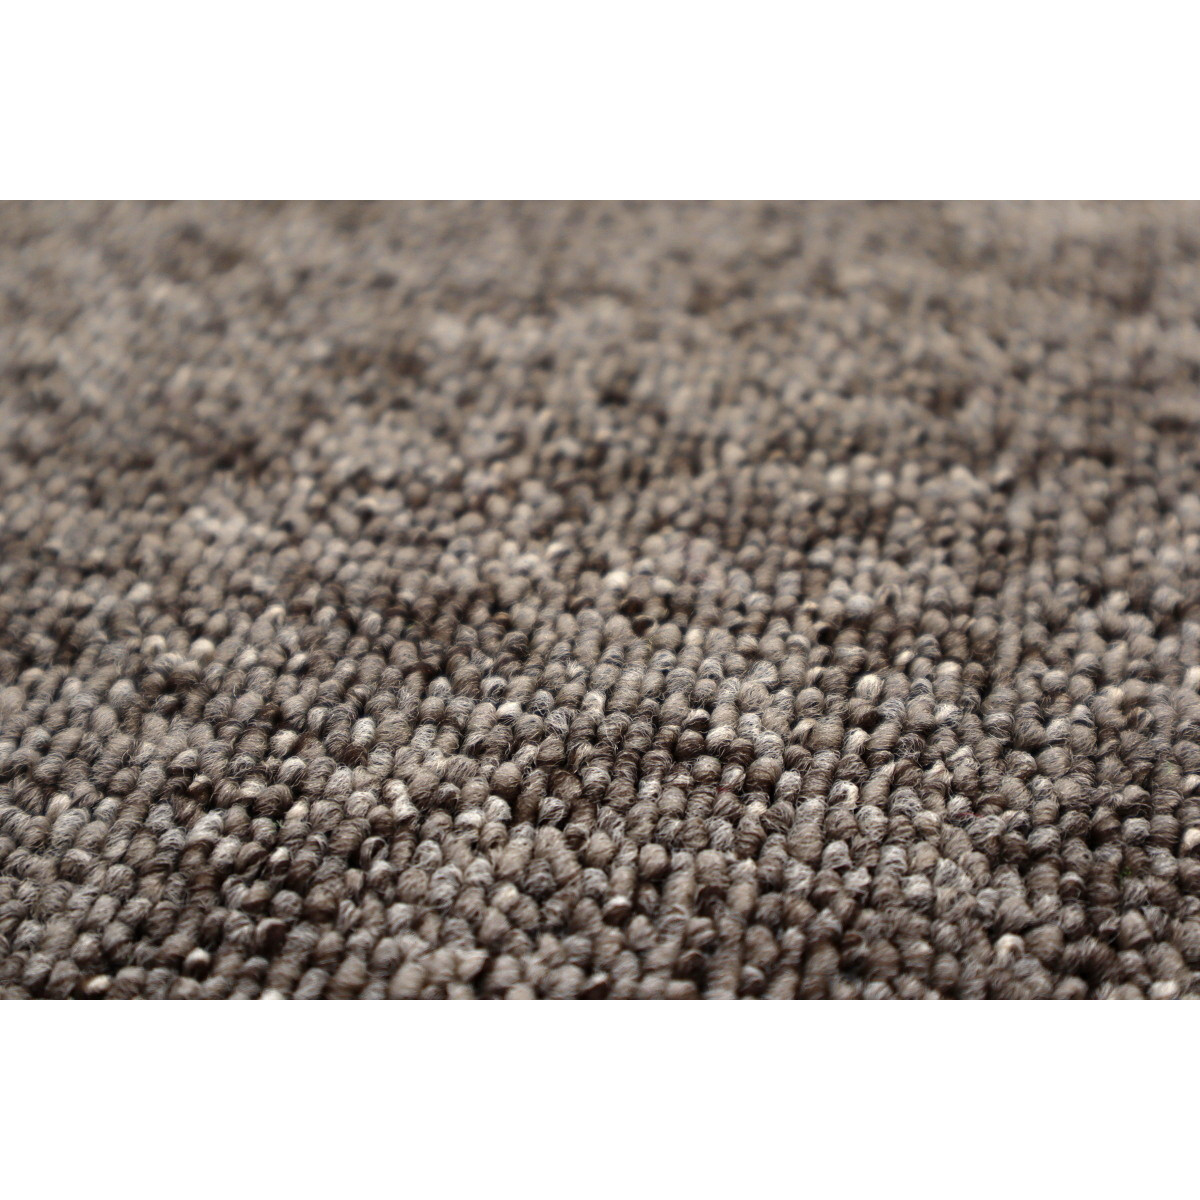 Metrážový koberec Modena hnědá